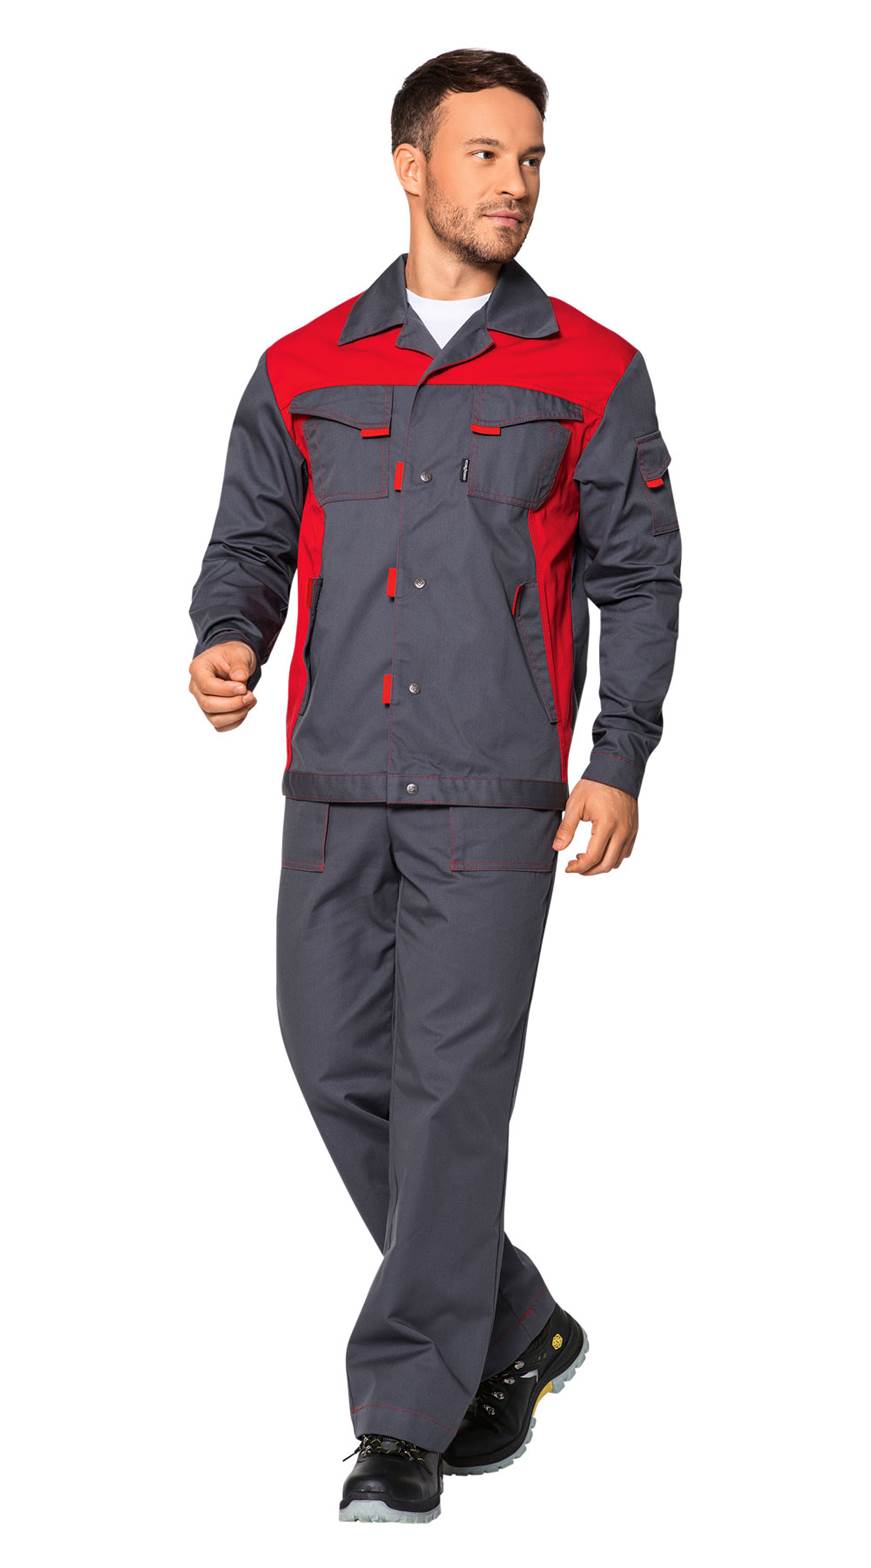 Костюм Спец куртка и полукомбинезон серый размер 48-50 рост 170-176